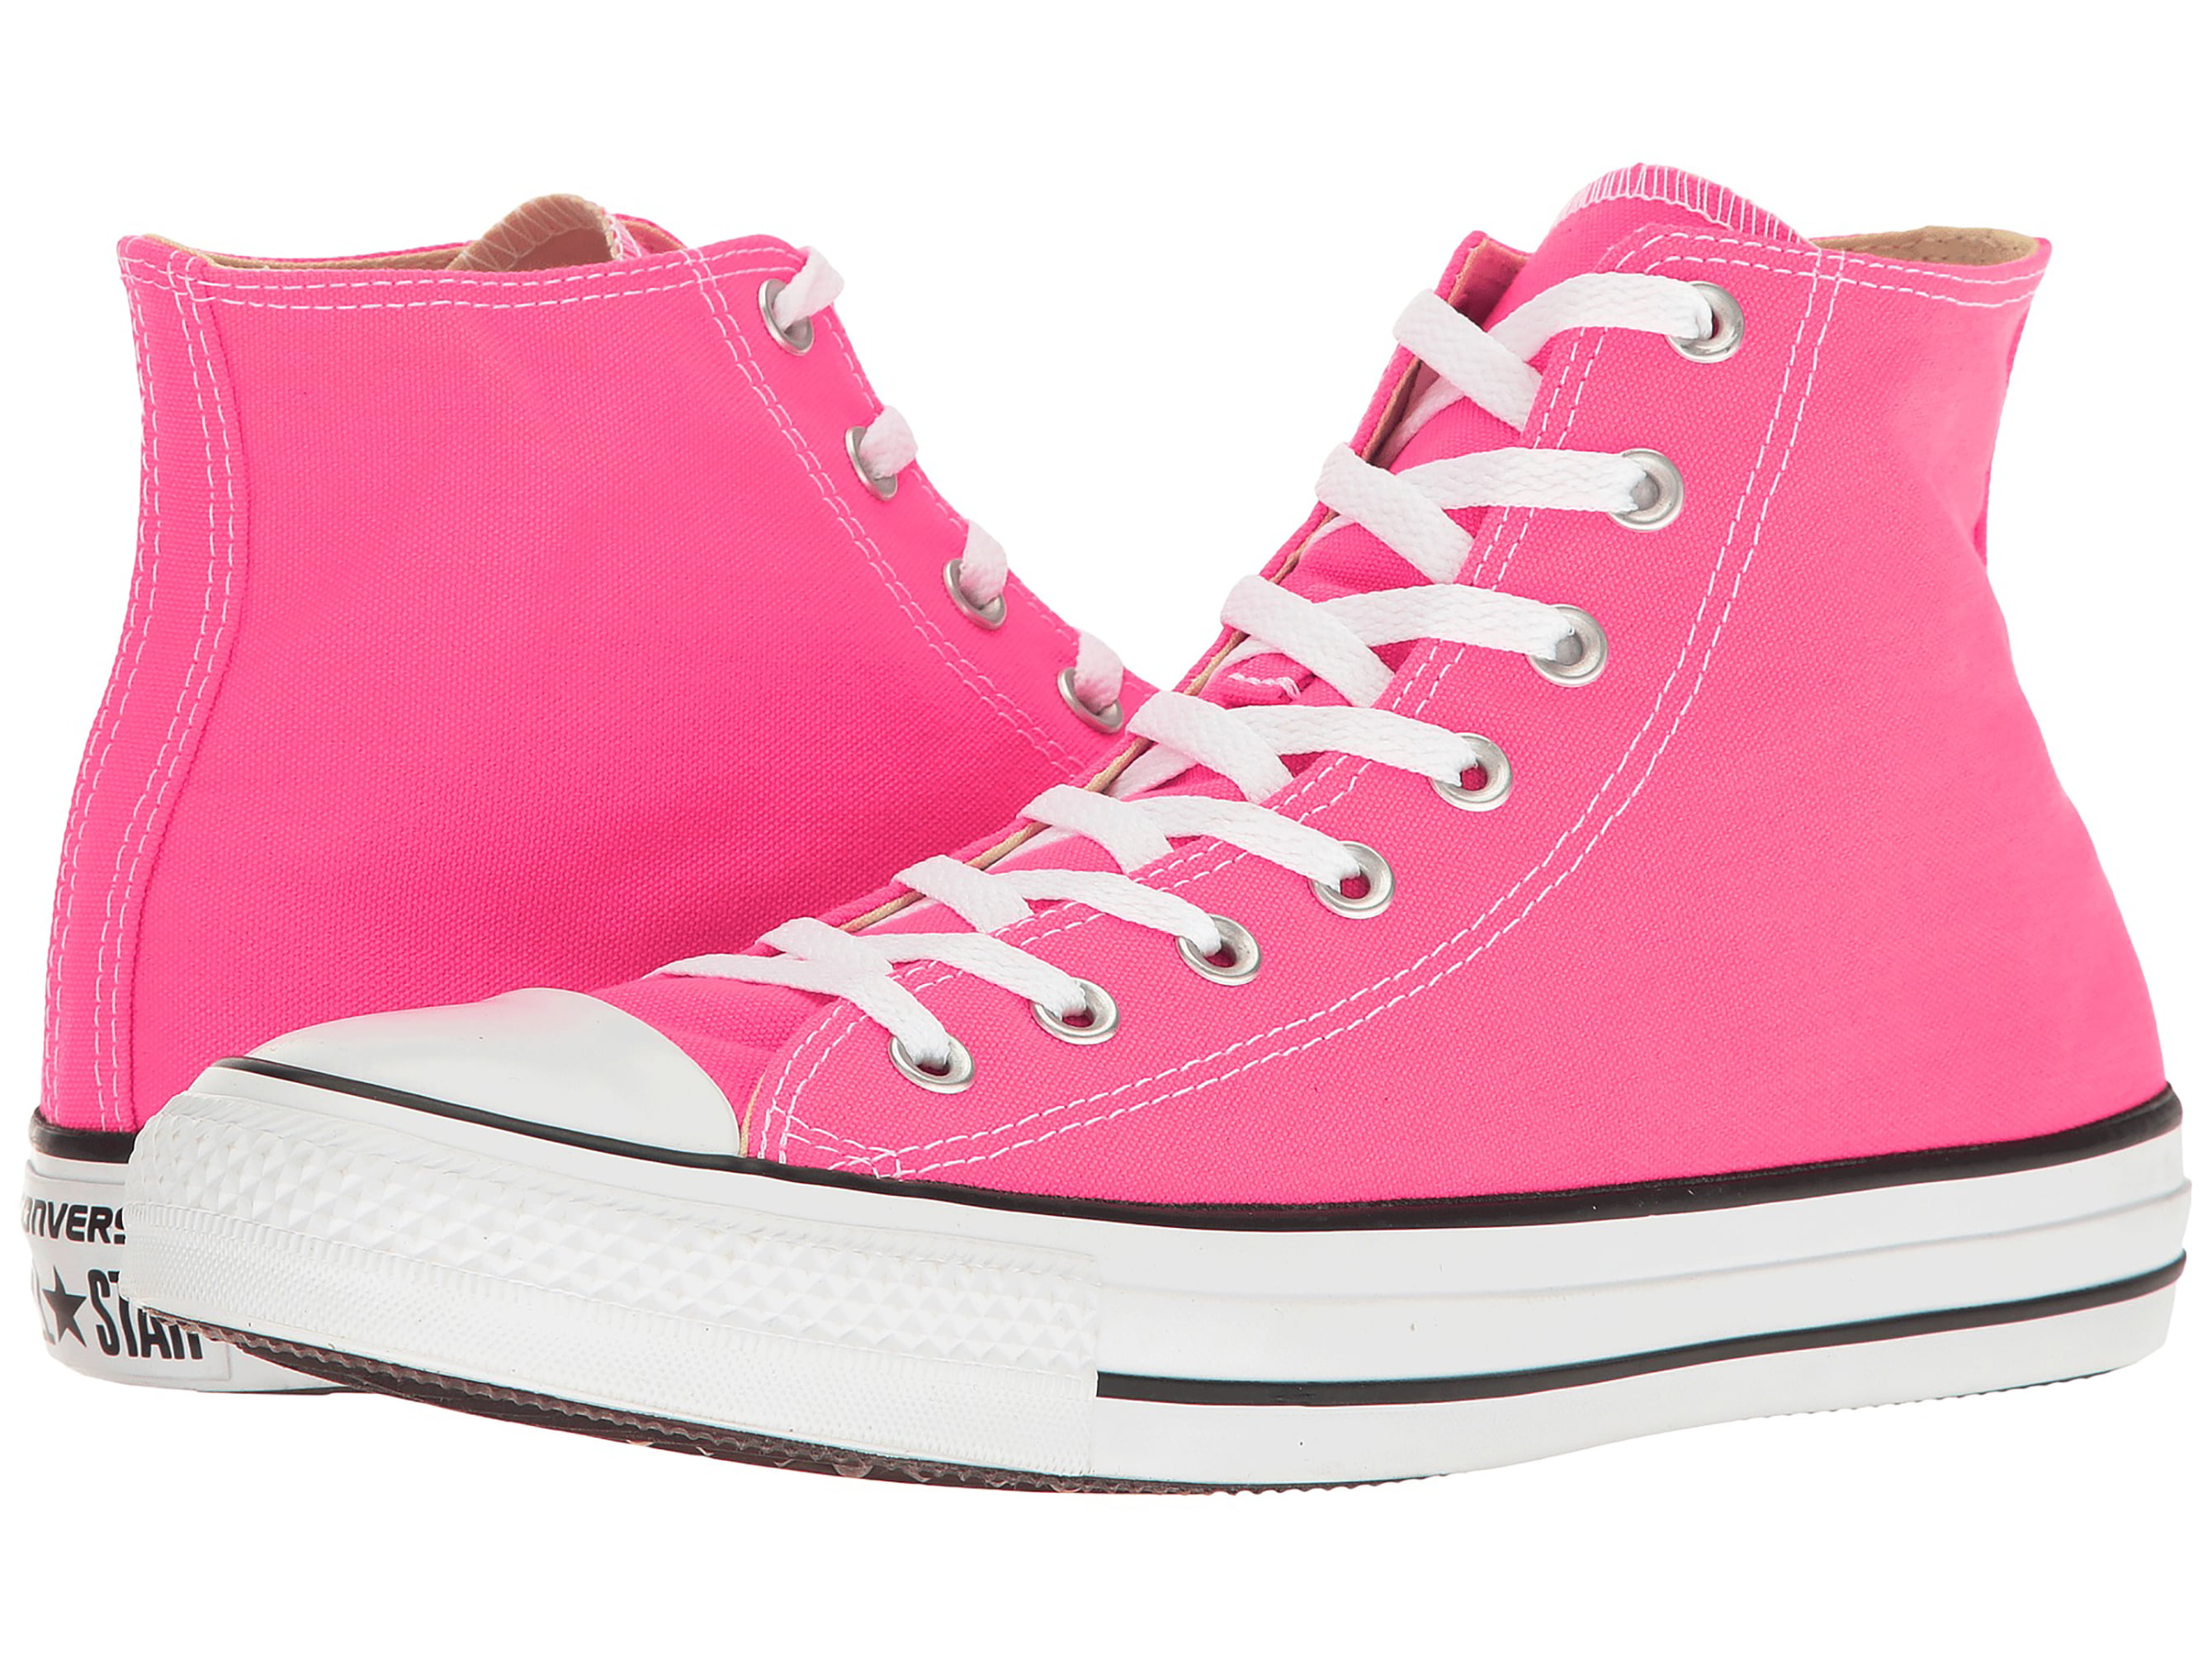 converse-chuck-taylor-all-star-seasonal-high-top-fashion-shoe-pink-pow-men-s-size-7-women-s-size